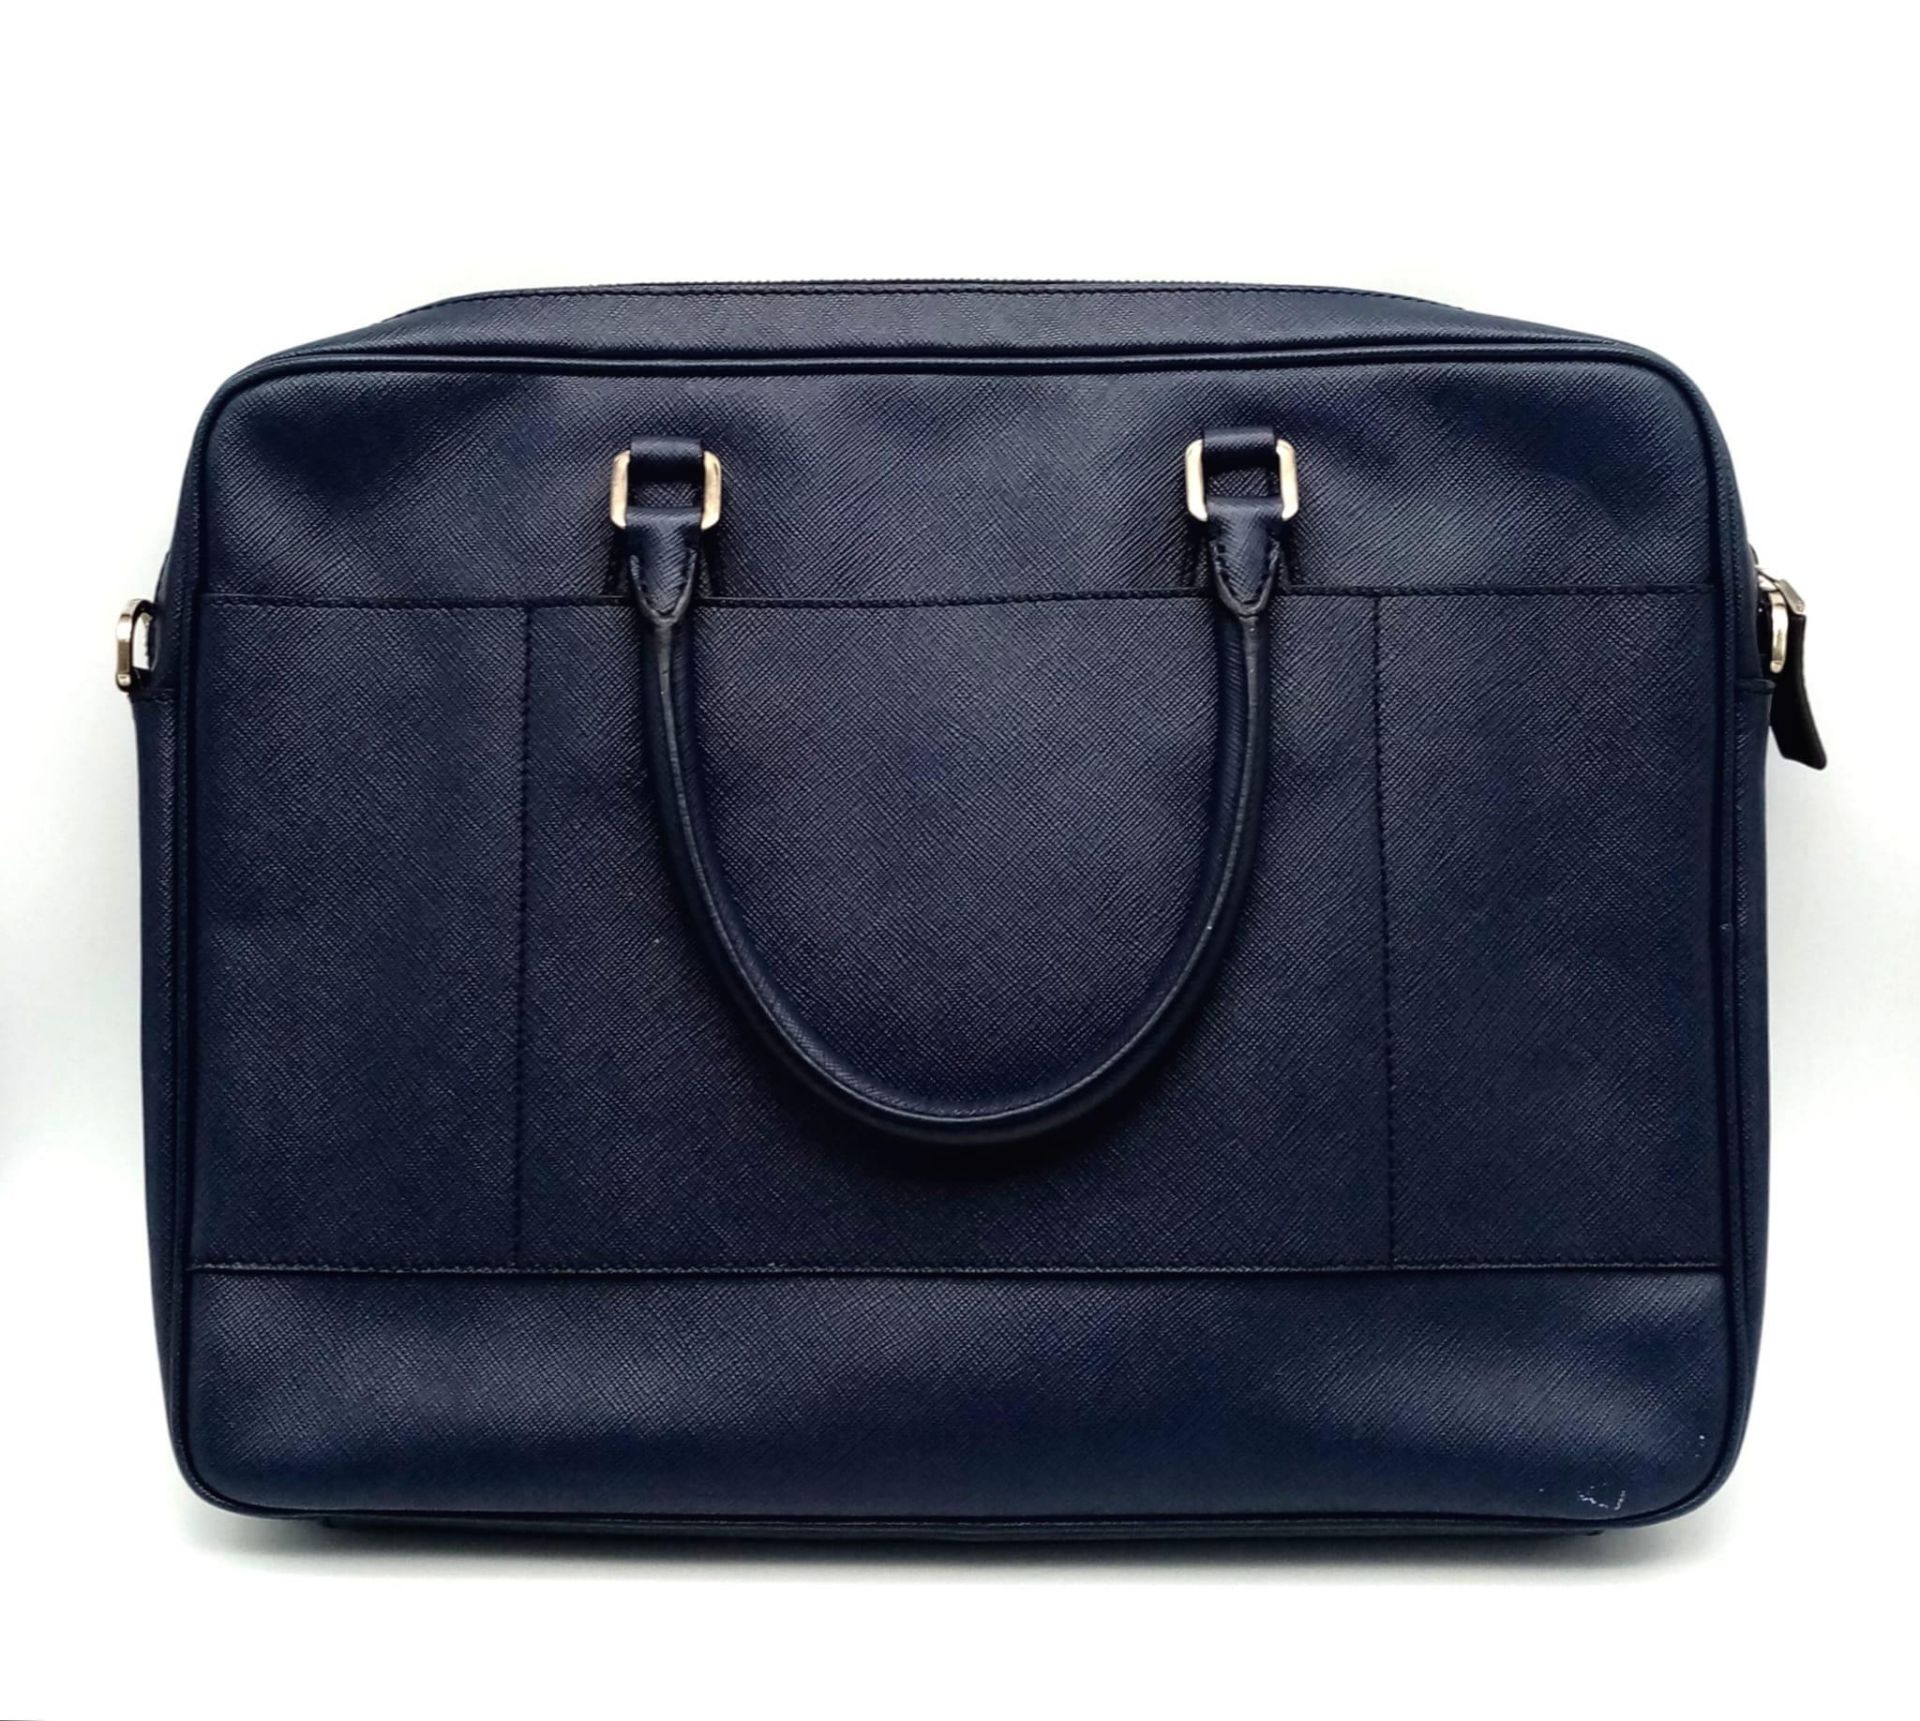 A Prada Saffiano Briefcase. Navy blue textured leather exterior. Prada logo badge. Name tag. Quality - Image 2 of 6